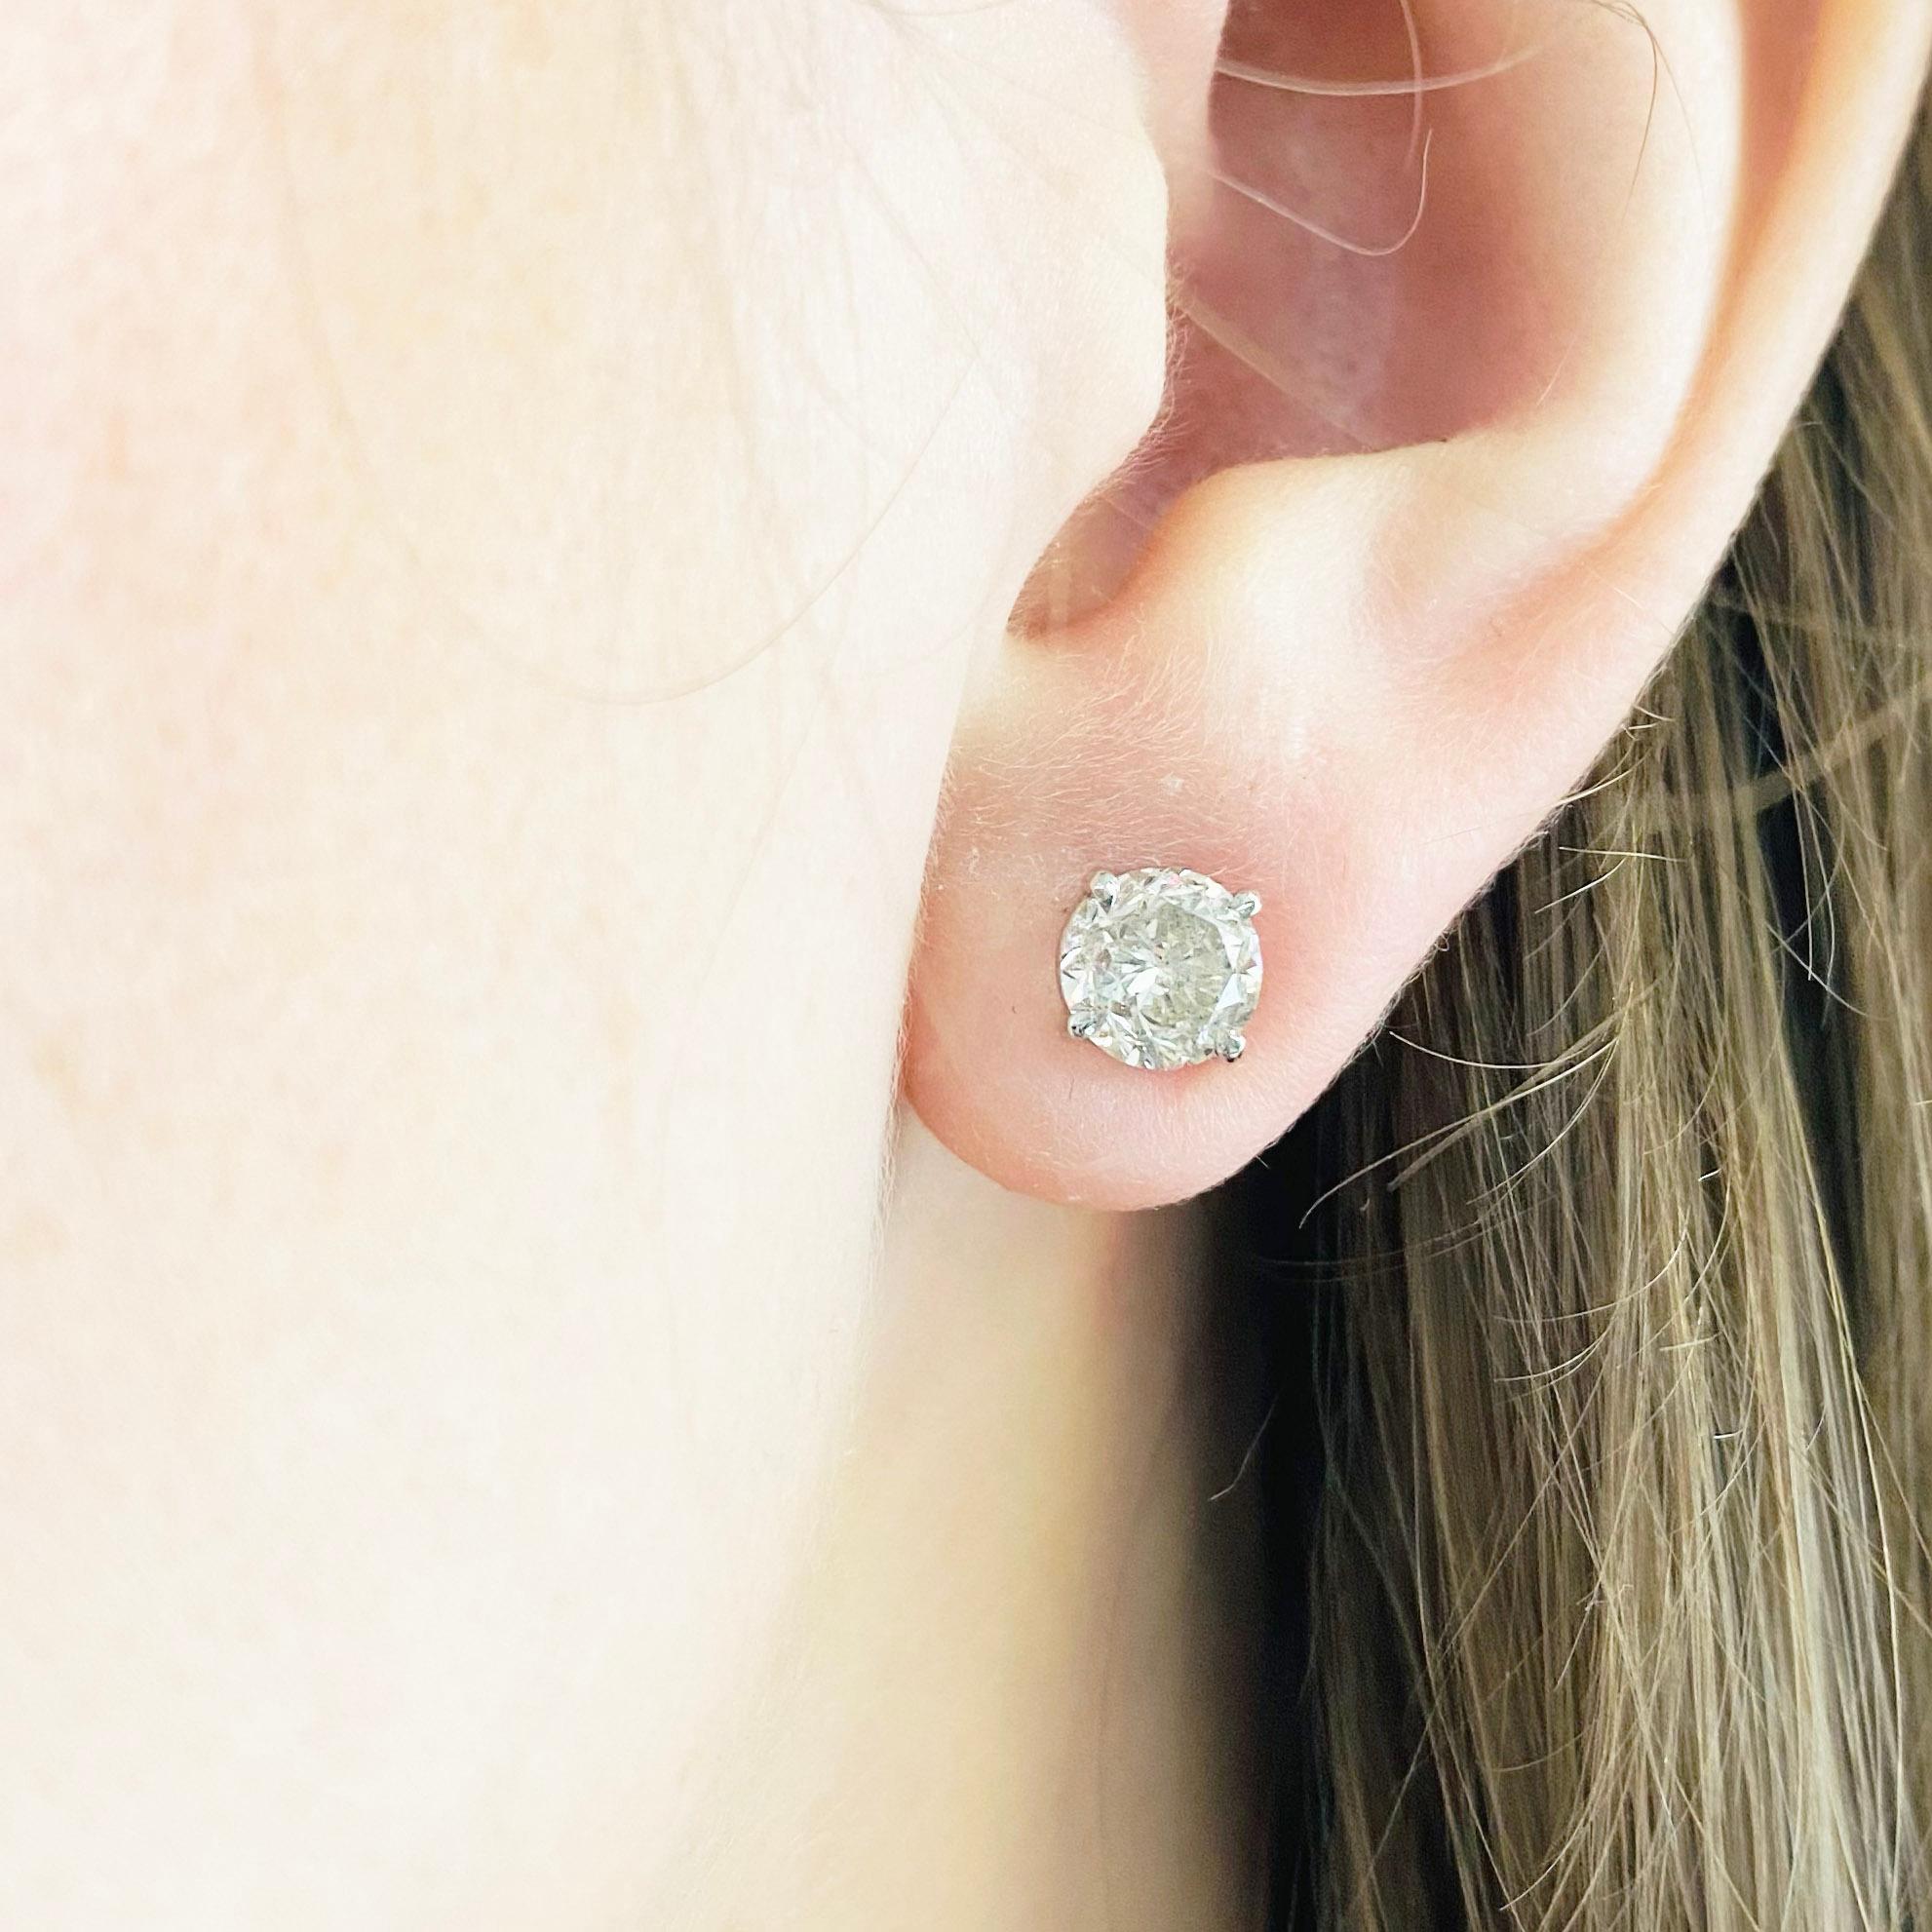 Diese atemberaubenden runden Diamant-Ohrstecker aus 14 Karat Weißgold sorgen für einen trendigen und zugleich klassischen Look. Diese diamantenen Ohrringe sind ein großartiges Accessoire für Ihre Sammlung und können sowohl zu legerer als auch zu